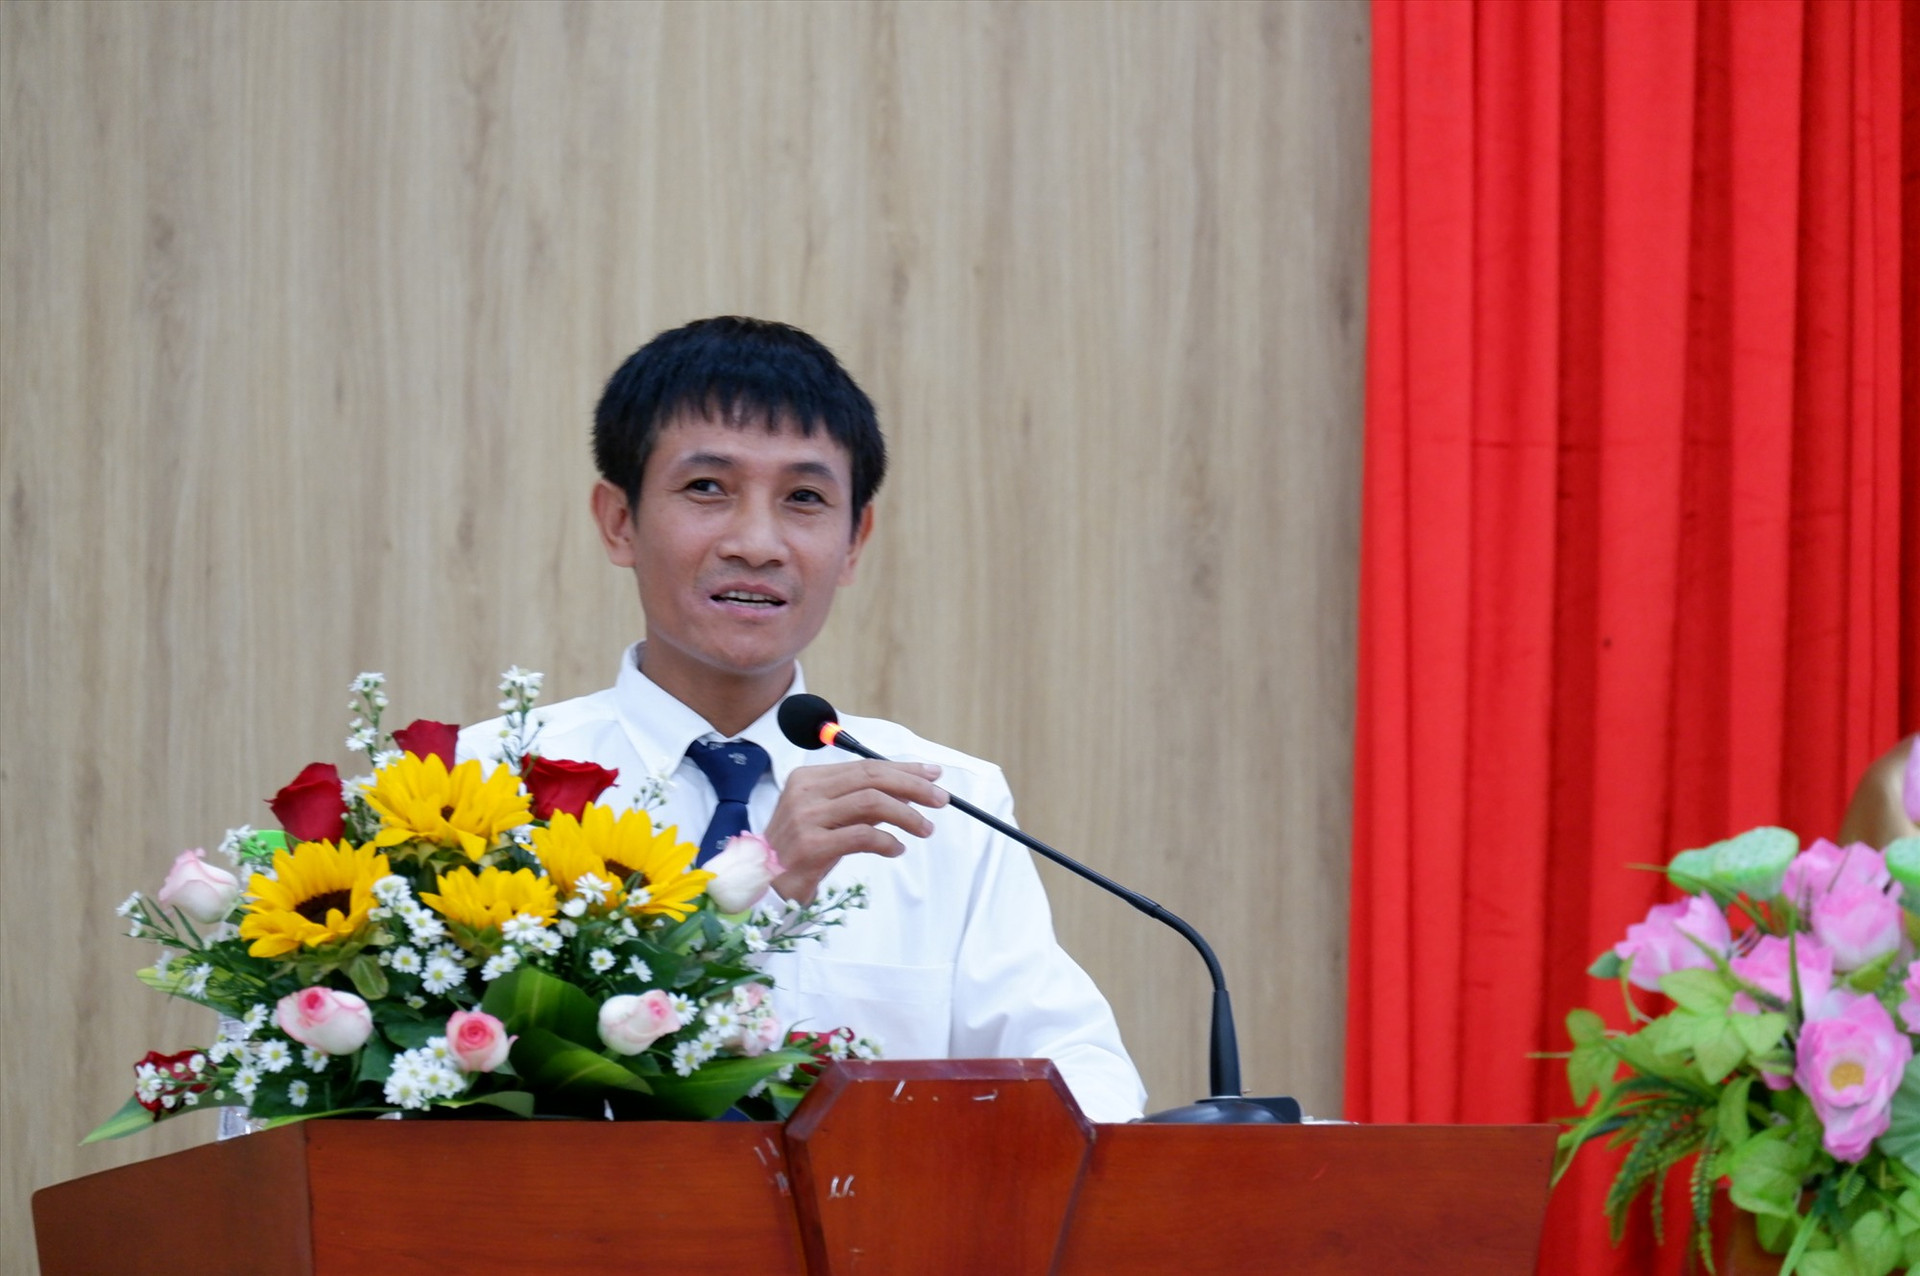 TS. Đinh Việt Hòa - Chủ tịch Hiệp hội Khởi nghiệp Quốc gia là diễn giả chính tại Diễn đàn. Ảnh: X.H